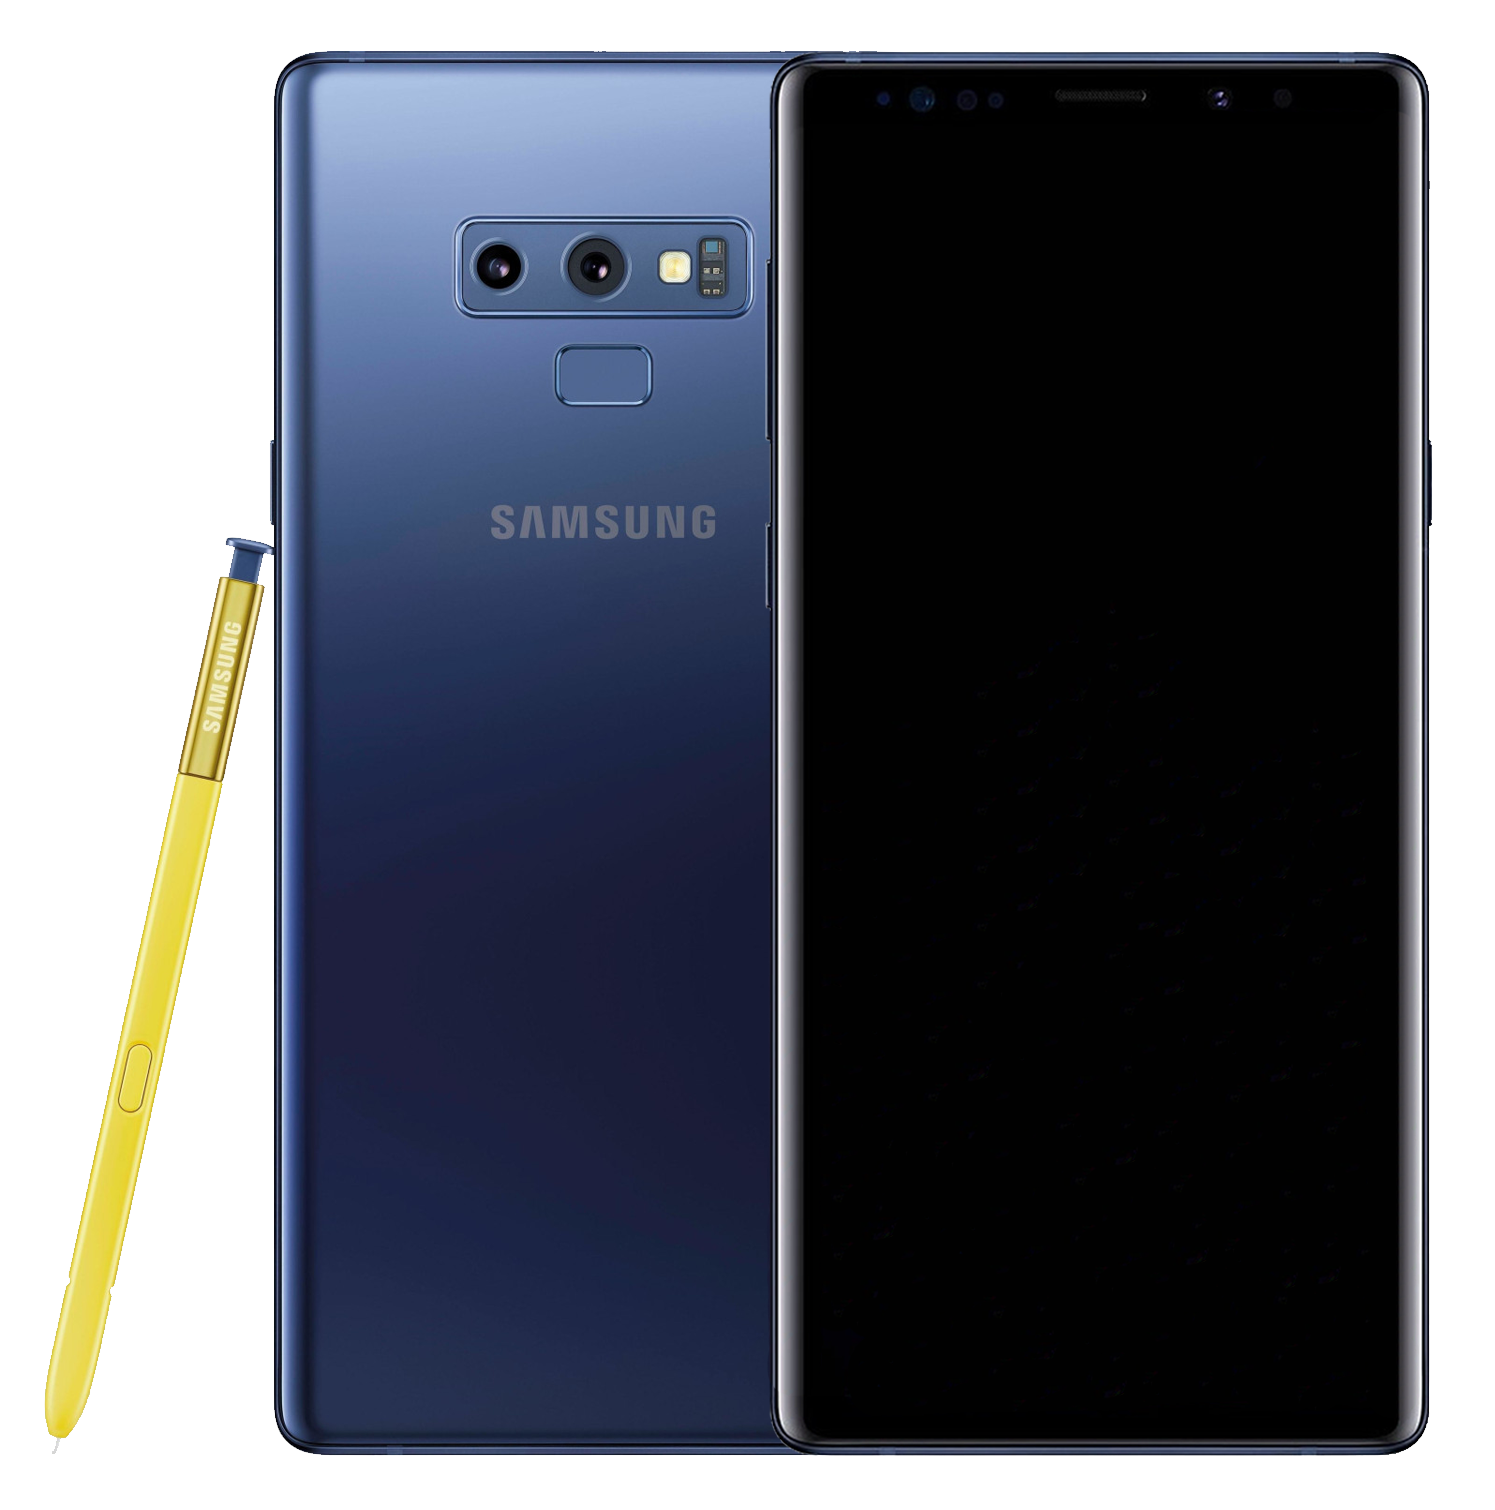 Samsung Galaxy Note 9 Dual-SIM blau - Ohne Vertrag